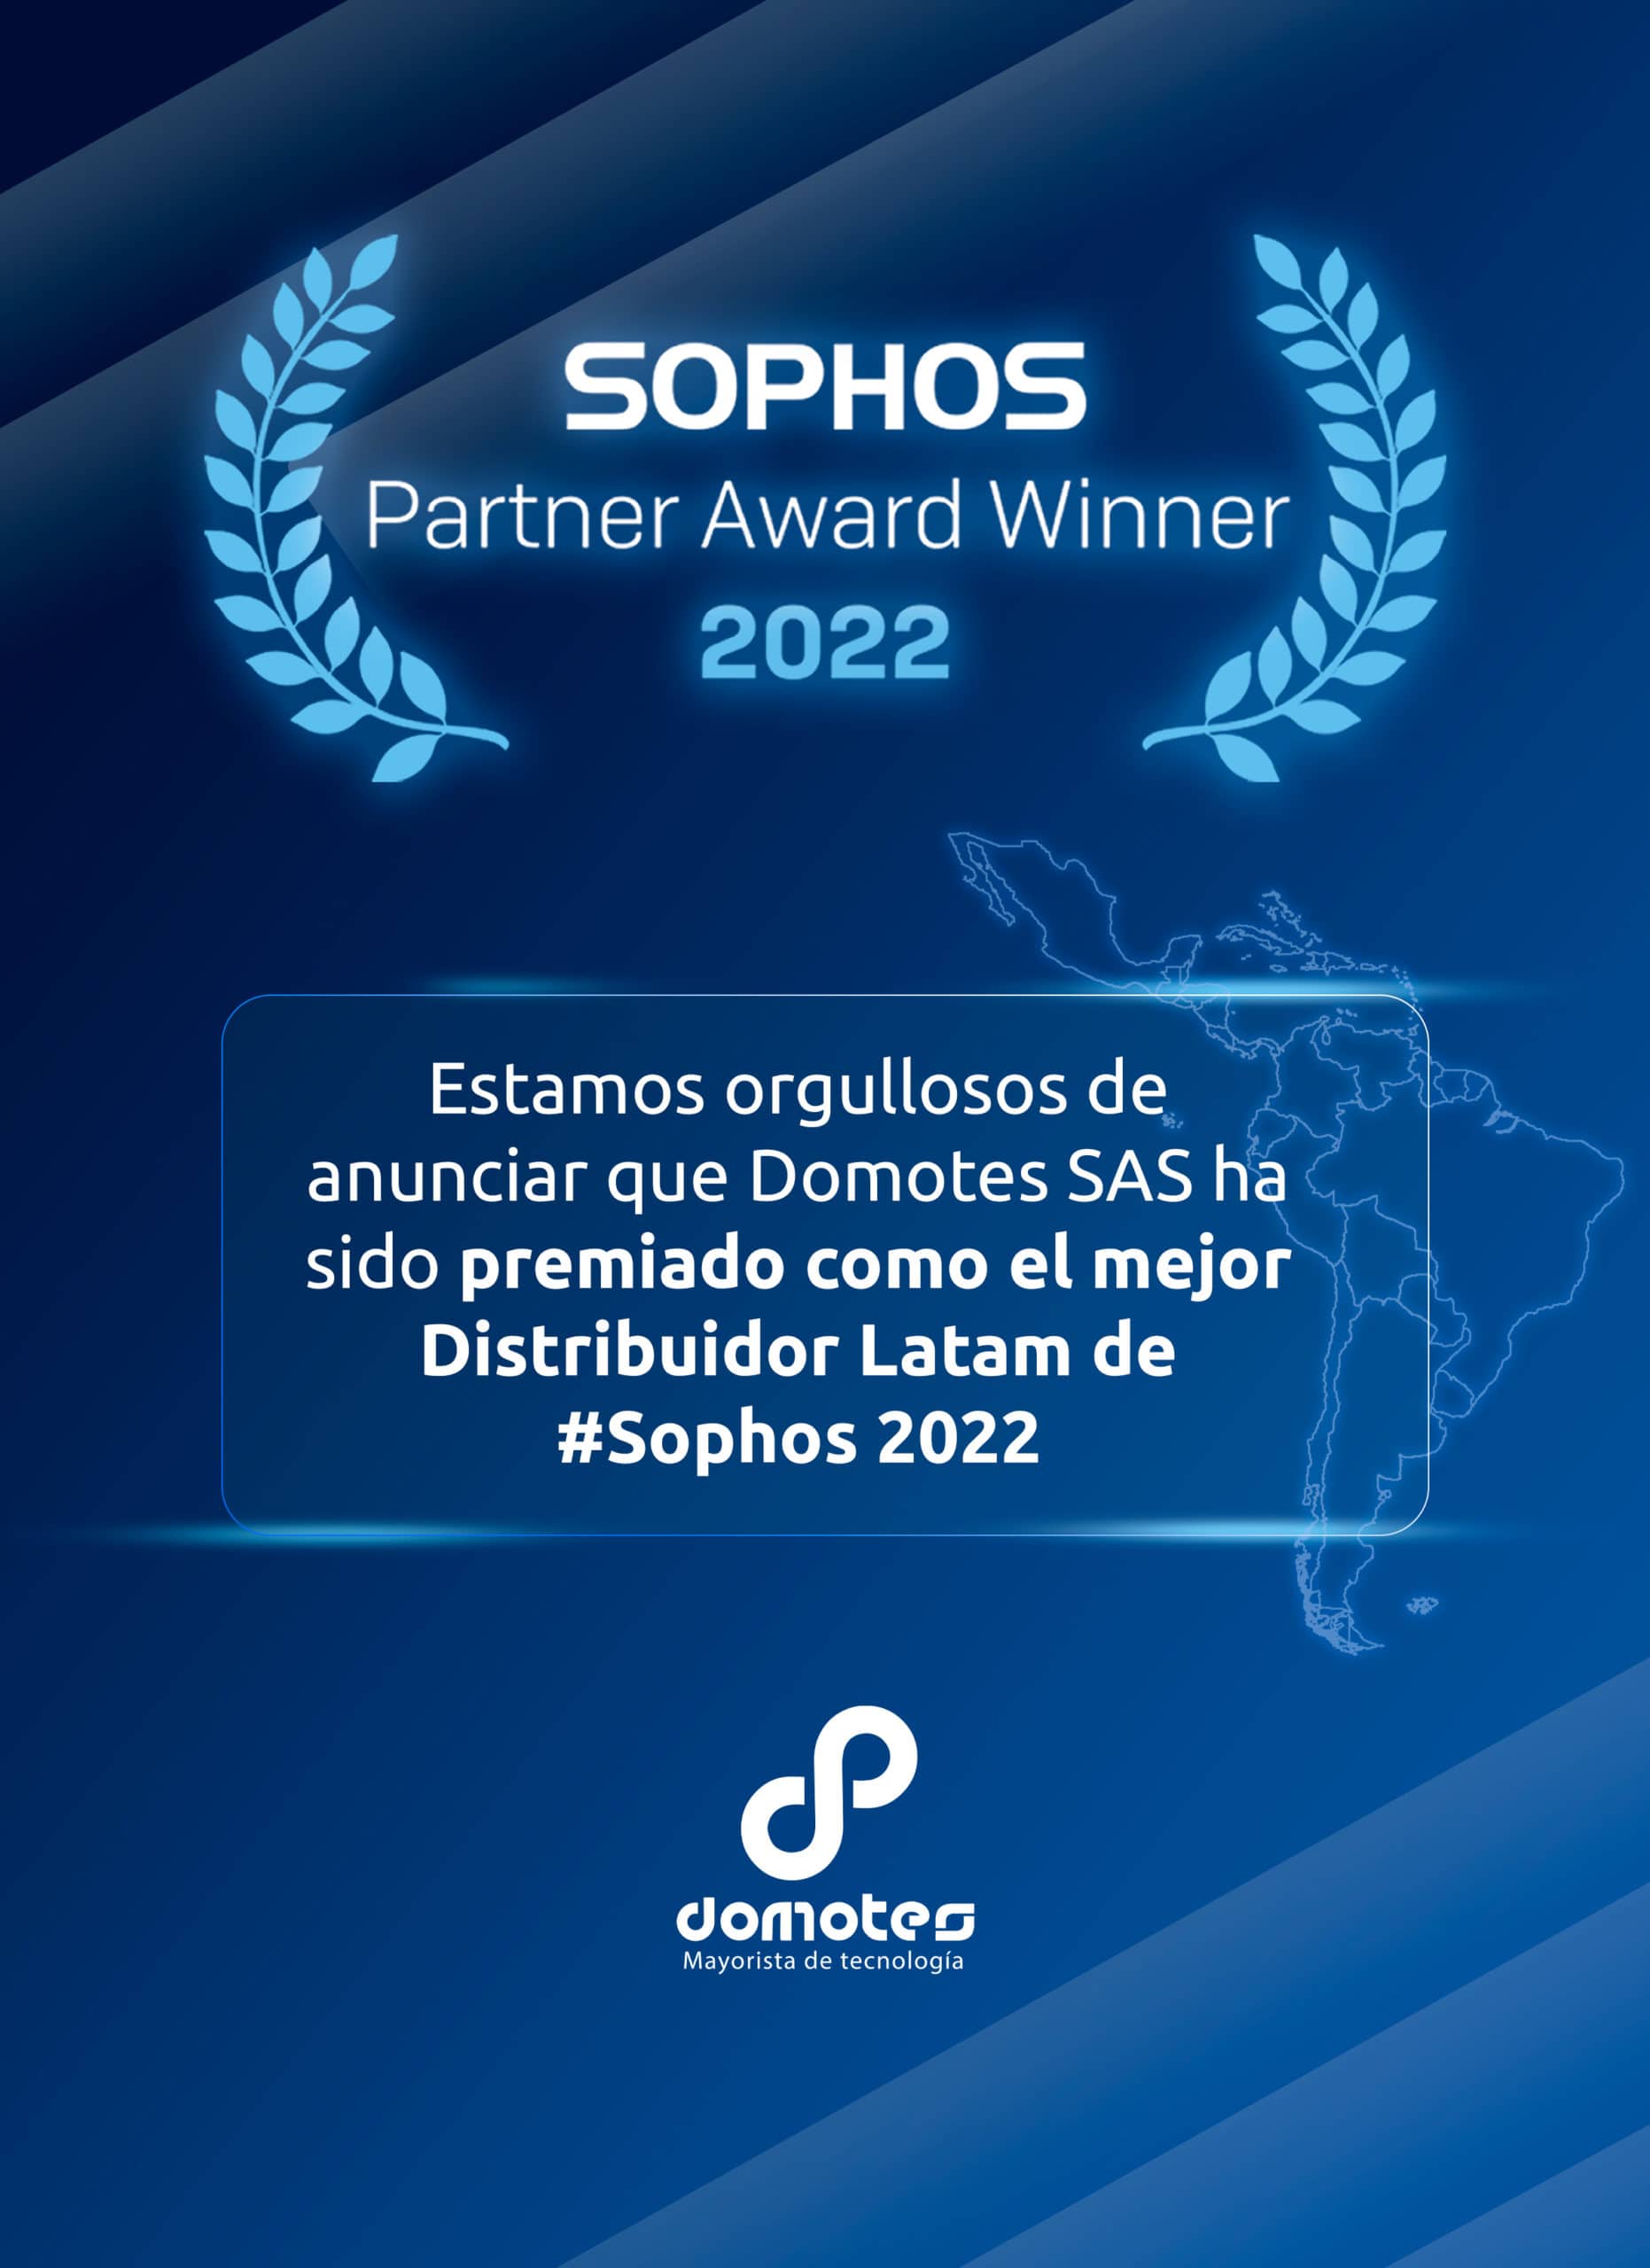 Domotes, una empresa colombiana ha sido premiada como el mejor Distribuidor Latam de Sophos 2022.